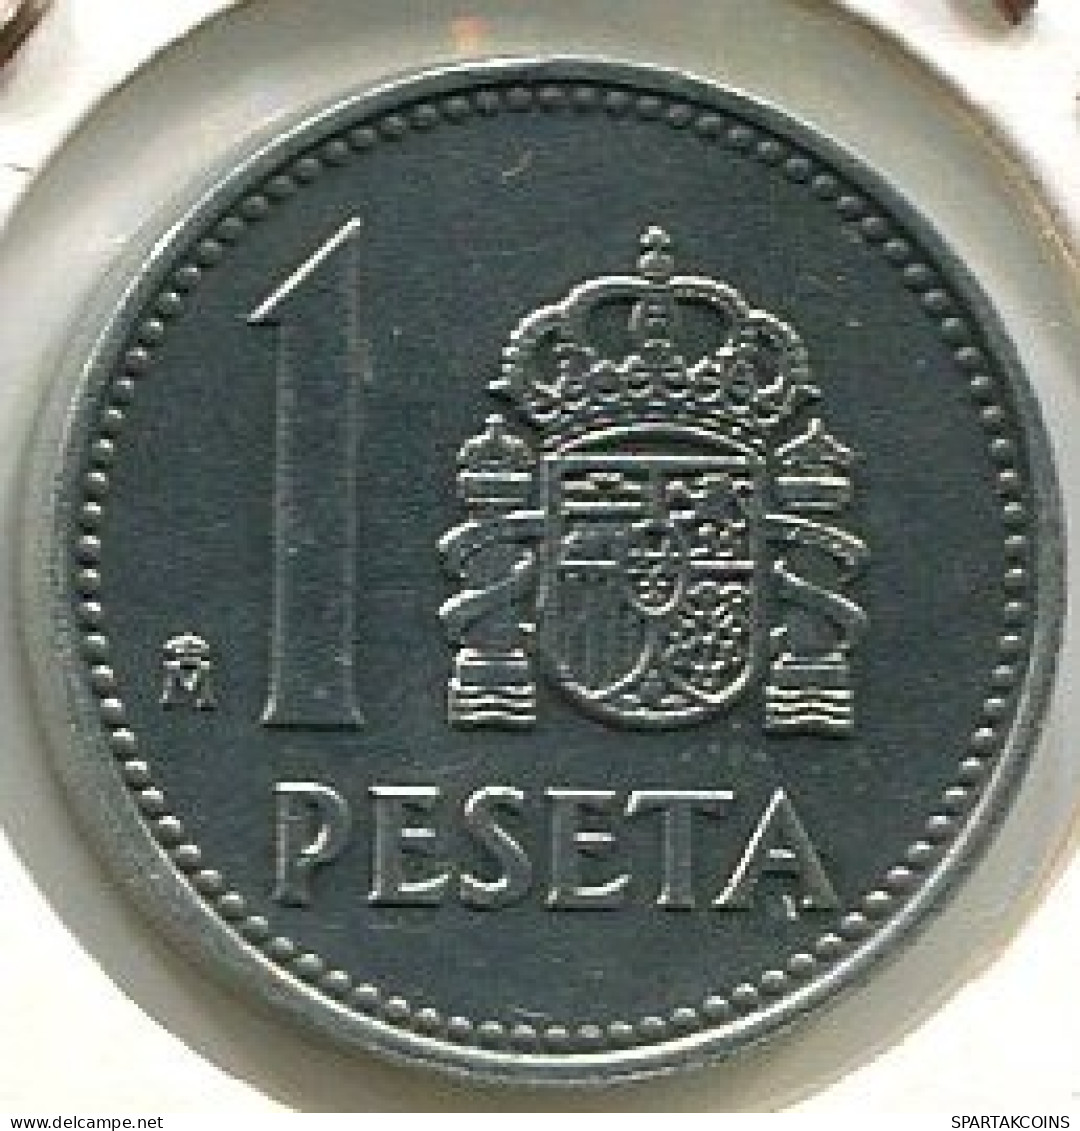 1 PESETA 1986 SPAIN #W10565.2.U.A - 1 Peseta